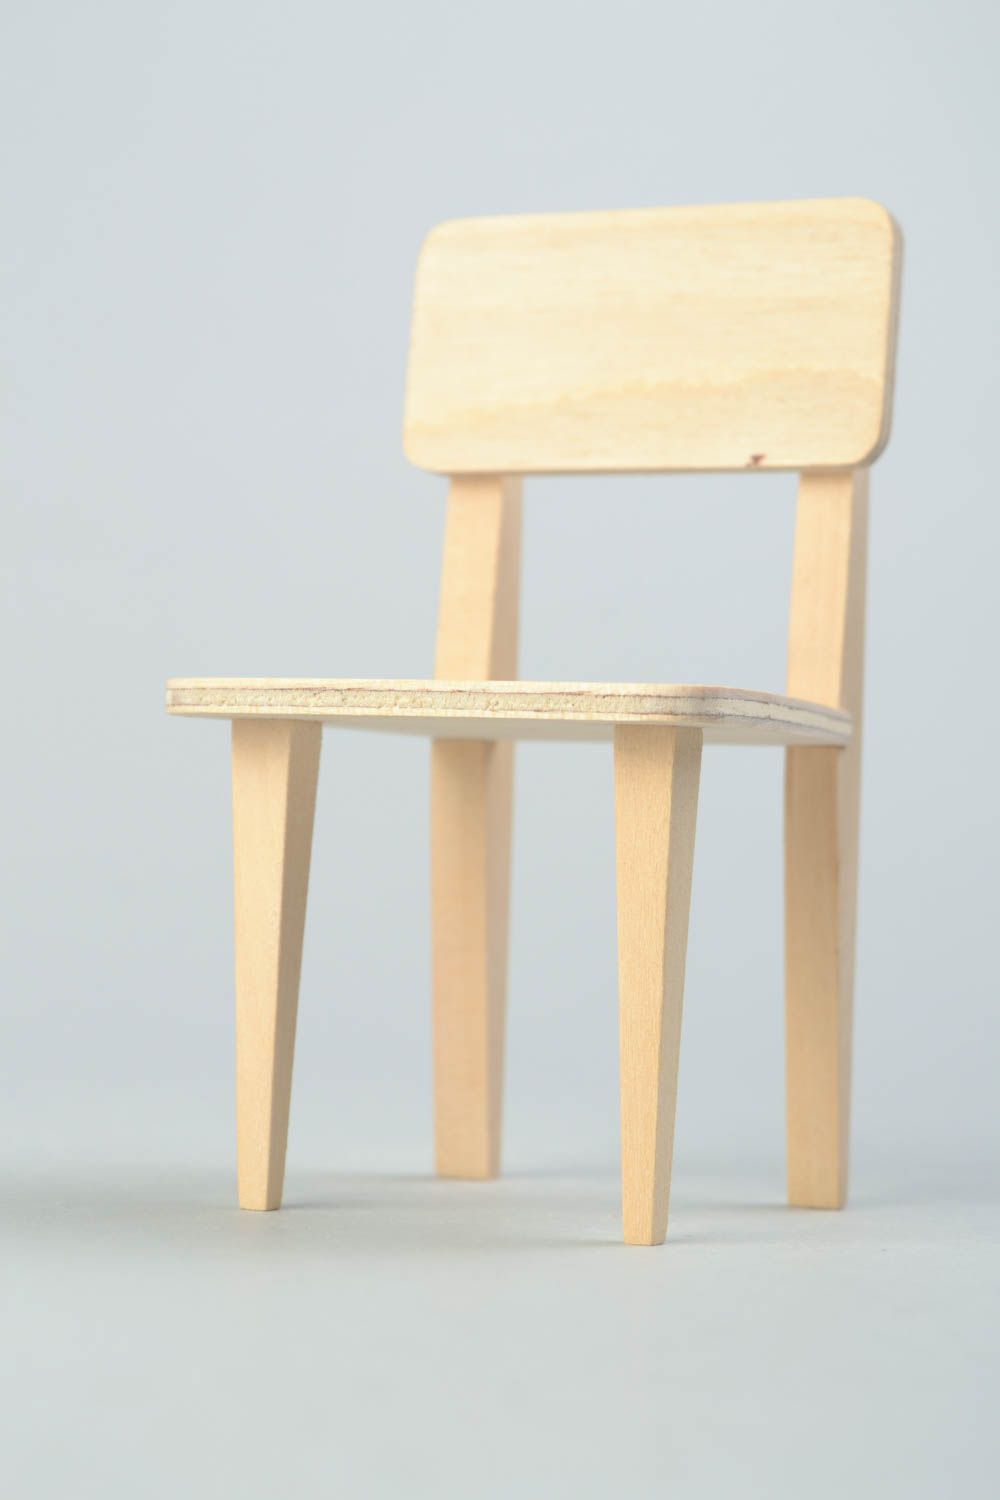 Hölzerner Rohling Stuhl zum Bemalen oder für Decoupage für Puppen Handarbeit foto 5